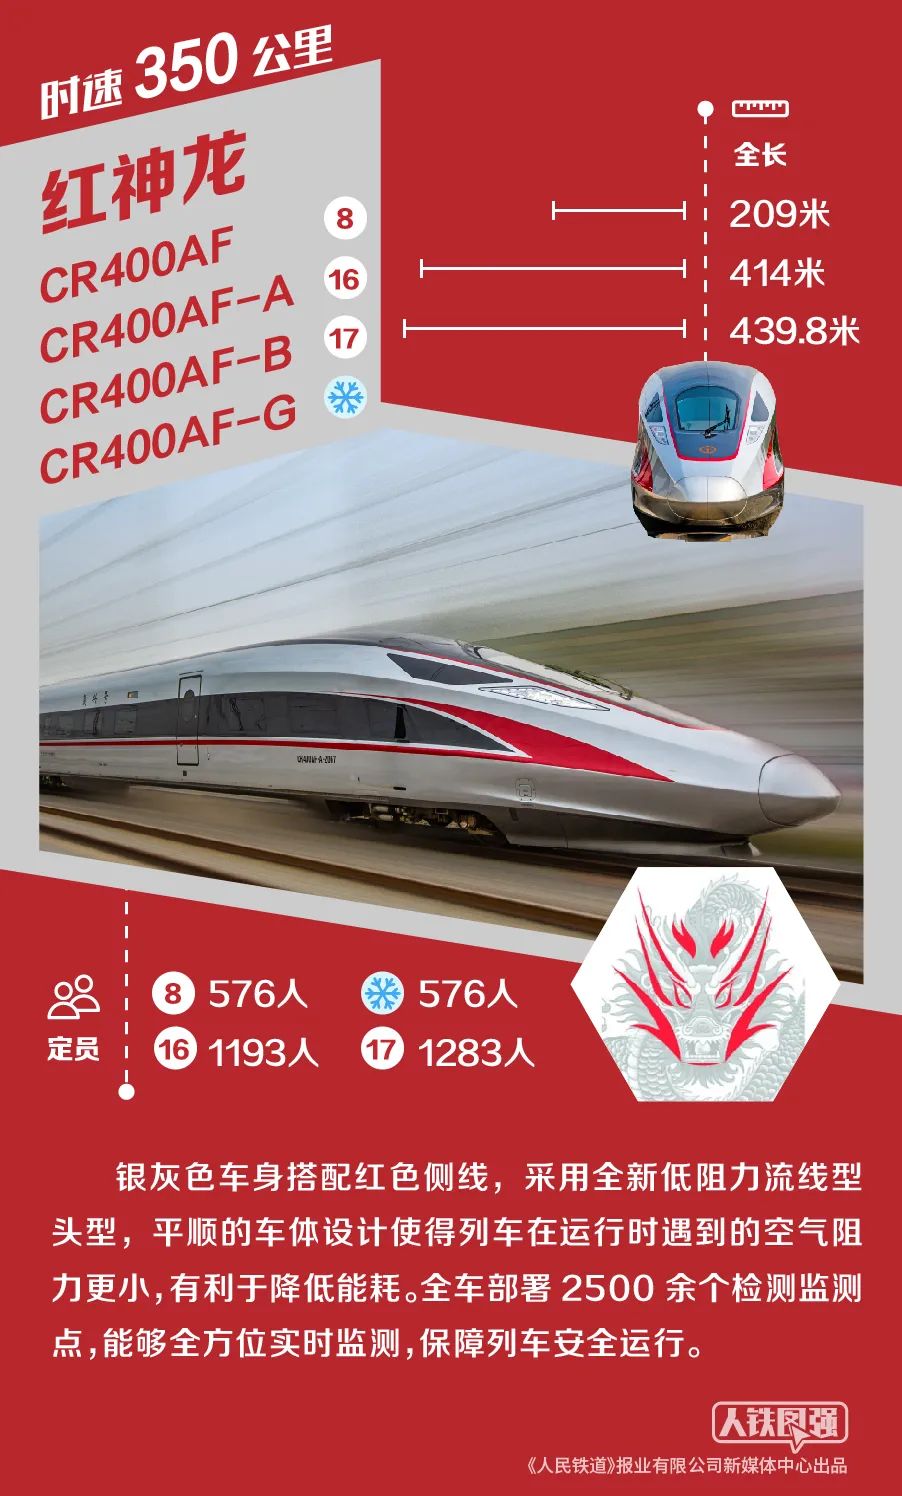 在京张高铁服役的复兴号智能动车组按照"平赛结合"的理念设计,包含